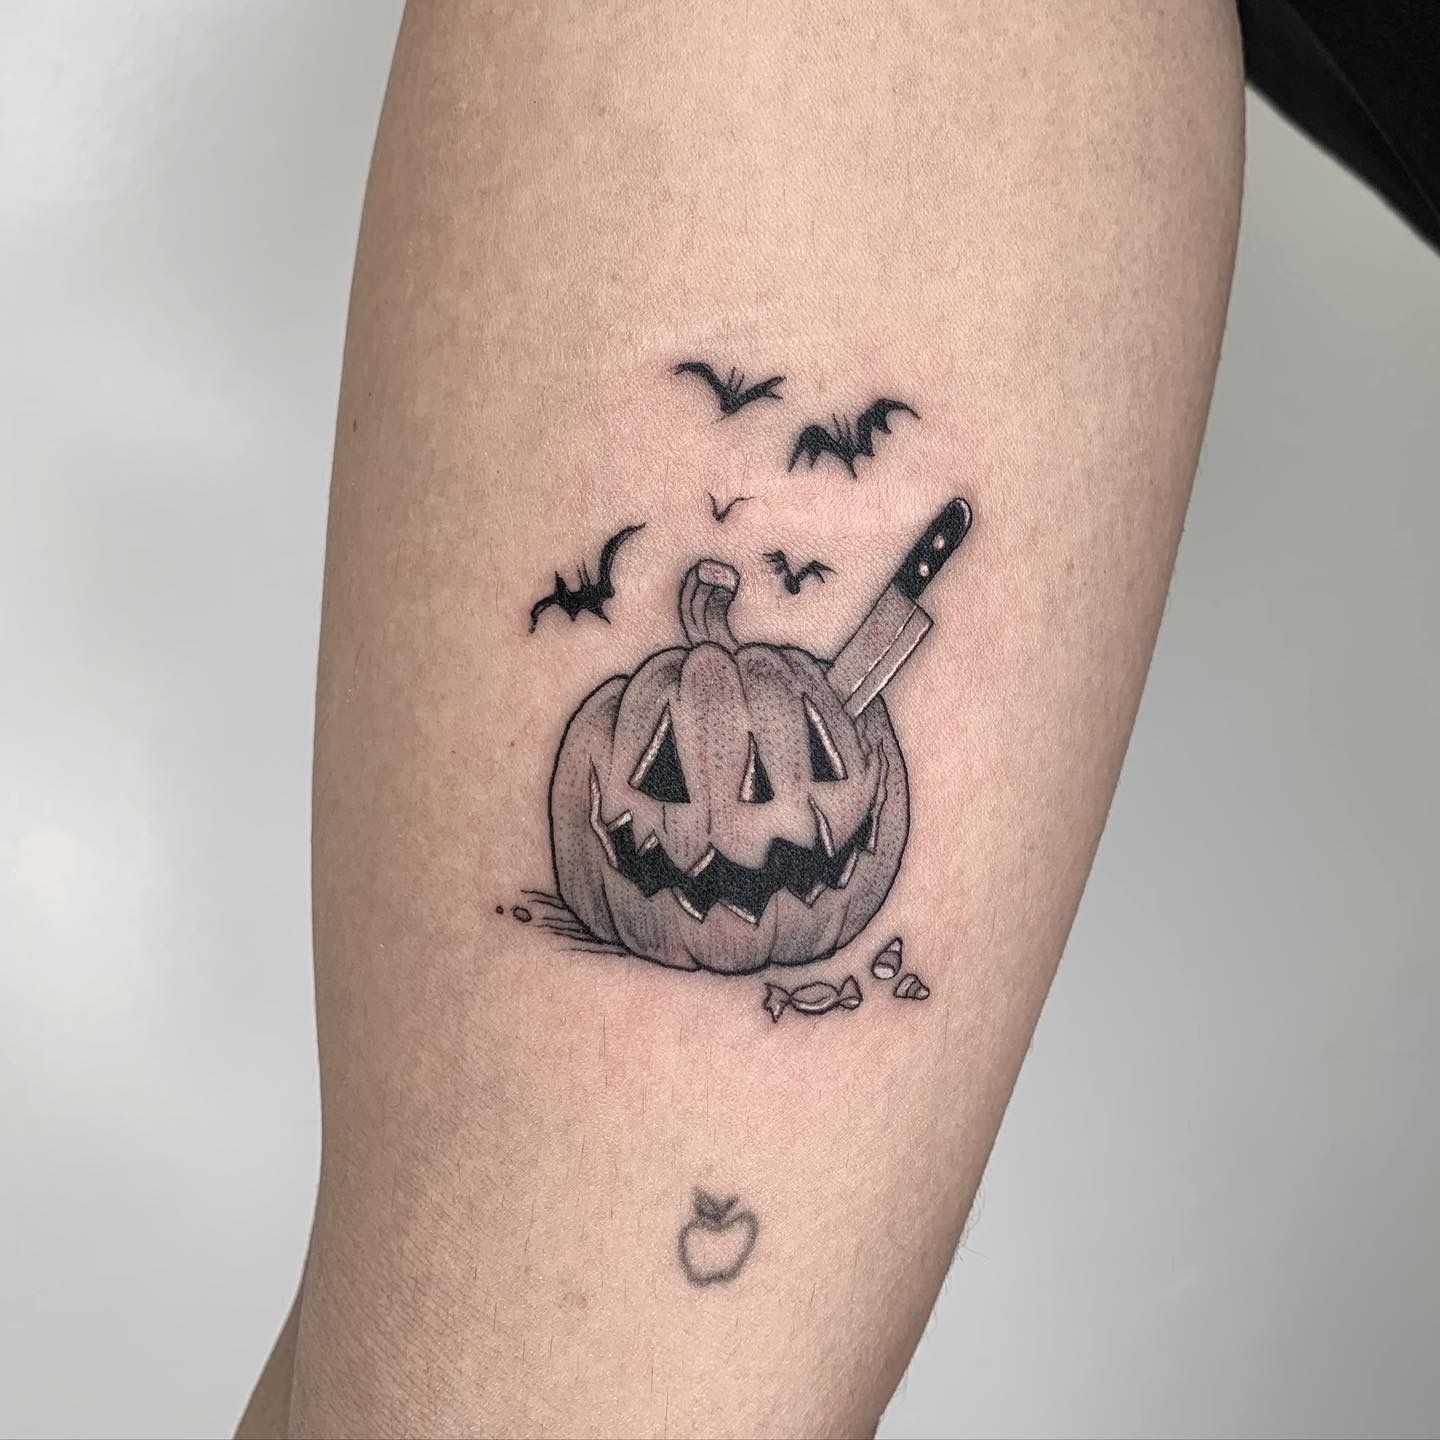 10 Simple and Chic Pumpkin Tattoo Designs  Pumpkin tattoo Halloween  tattoos Cool tattoos